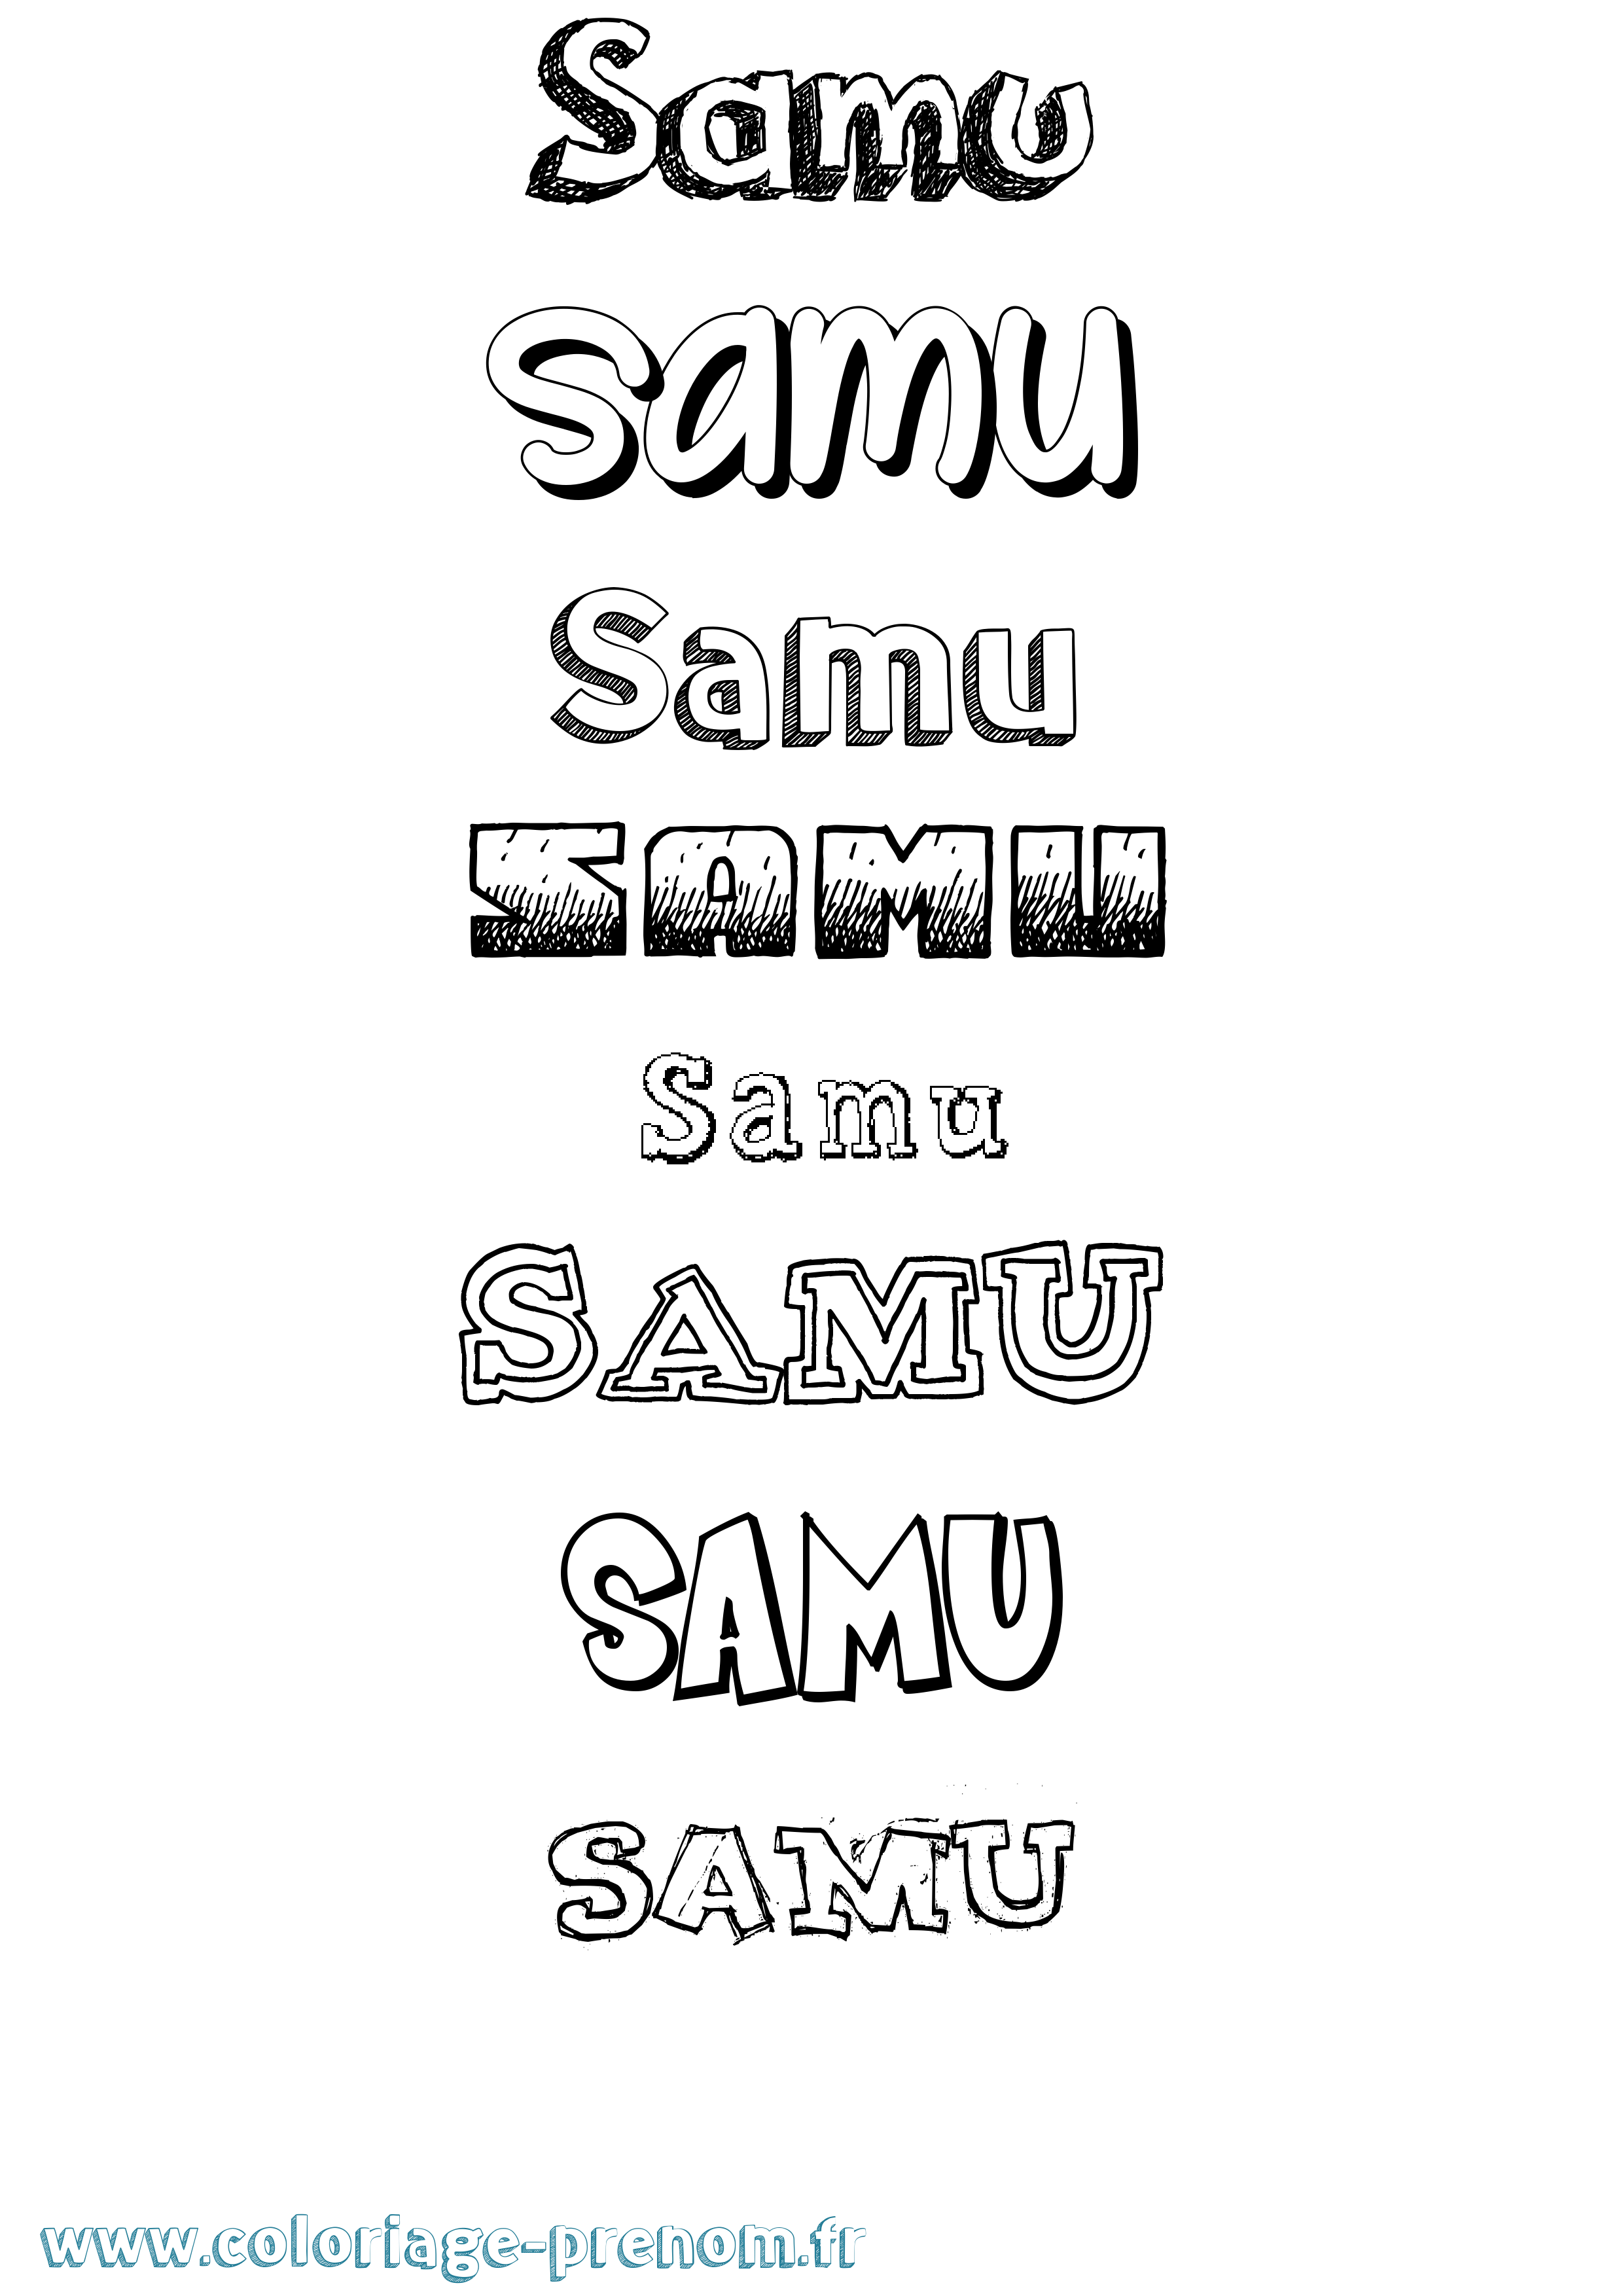 Coloriage prénom Samu Dessiné